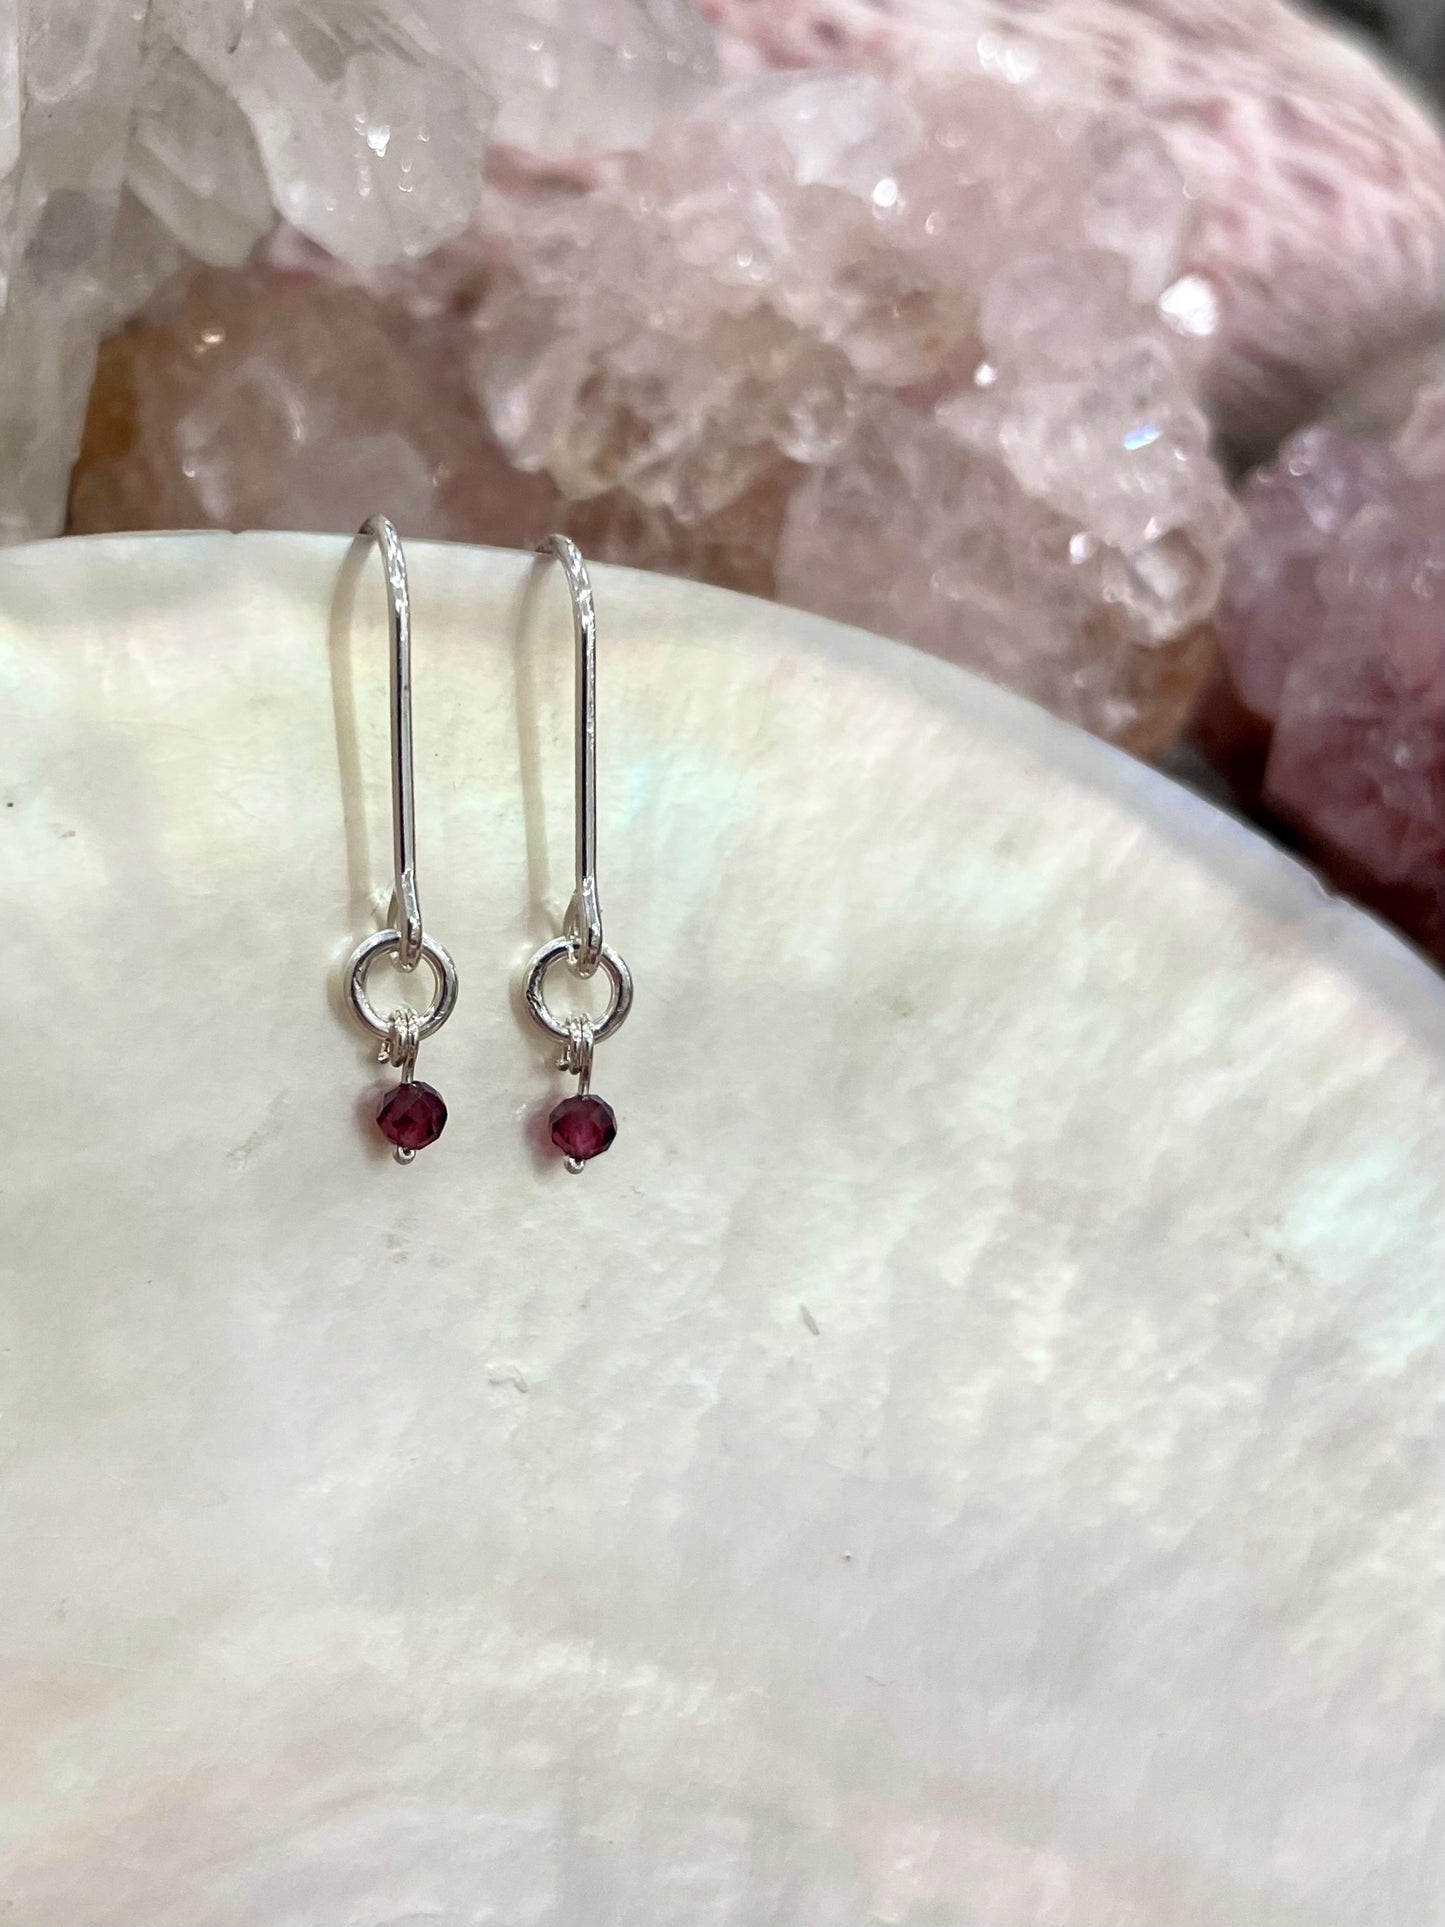 Mini gemstone hook earrings, garnet earrings, small garnet earrings in silver